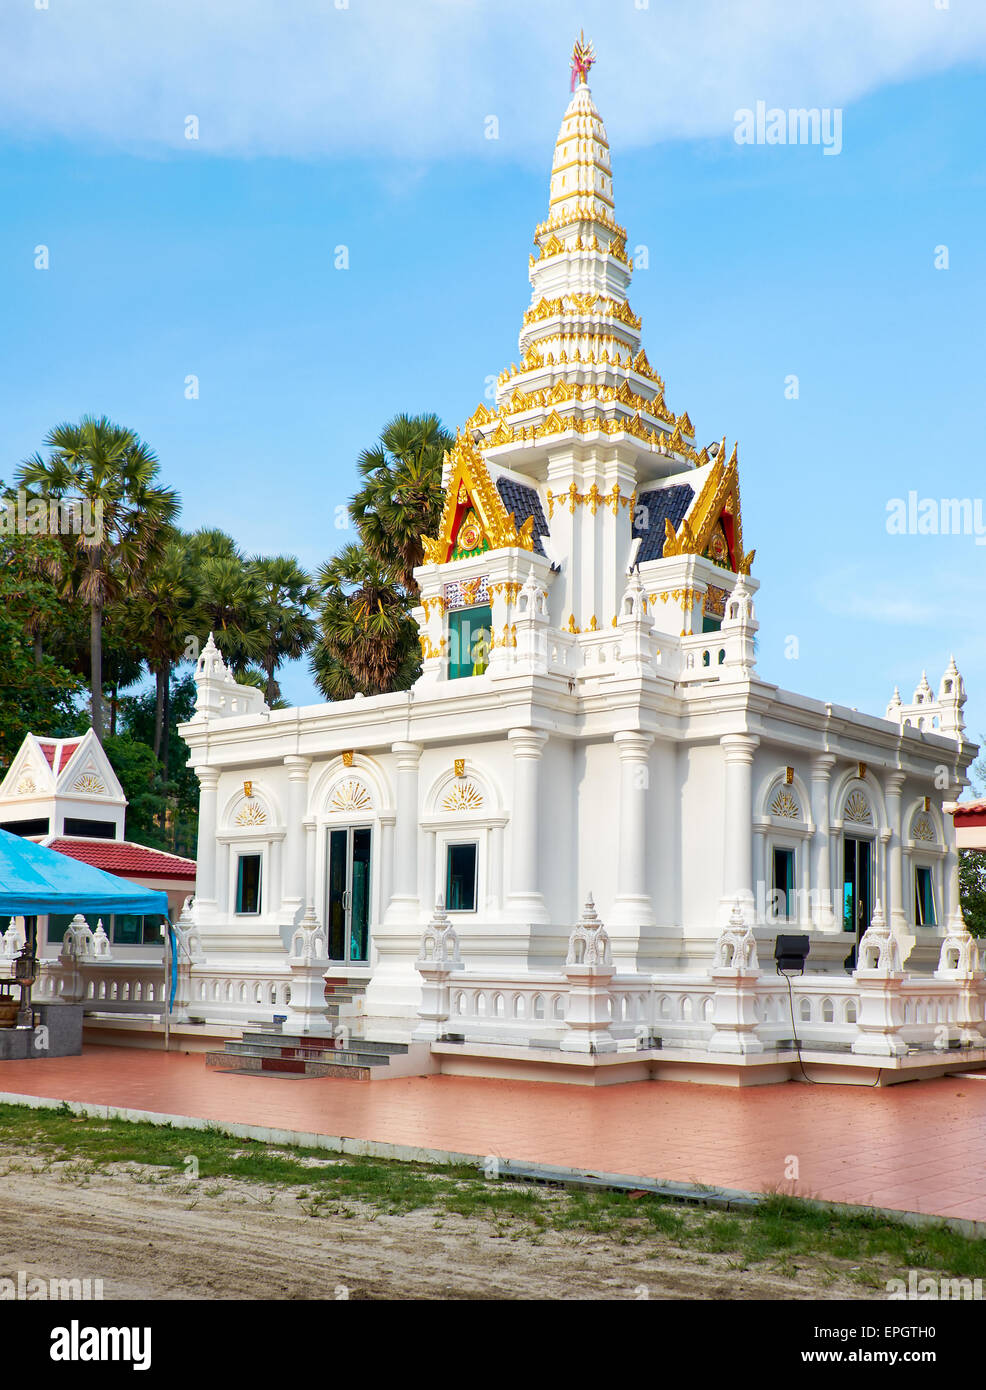 Buddist temple at Nai Harn, Phuket Stock Photo